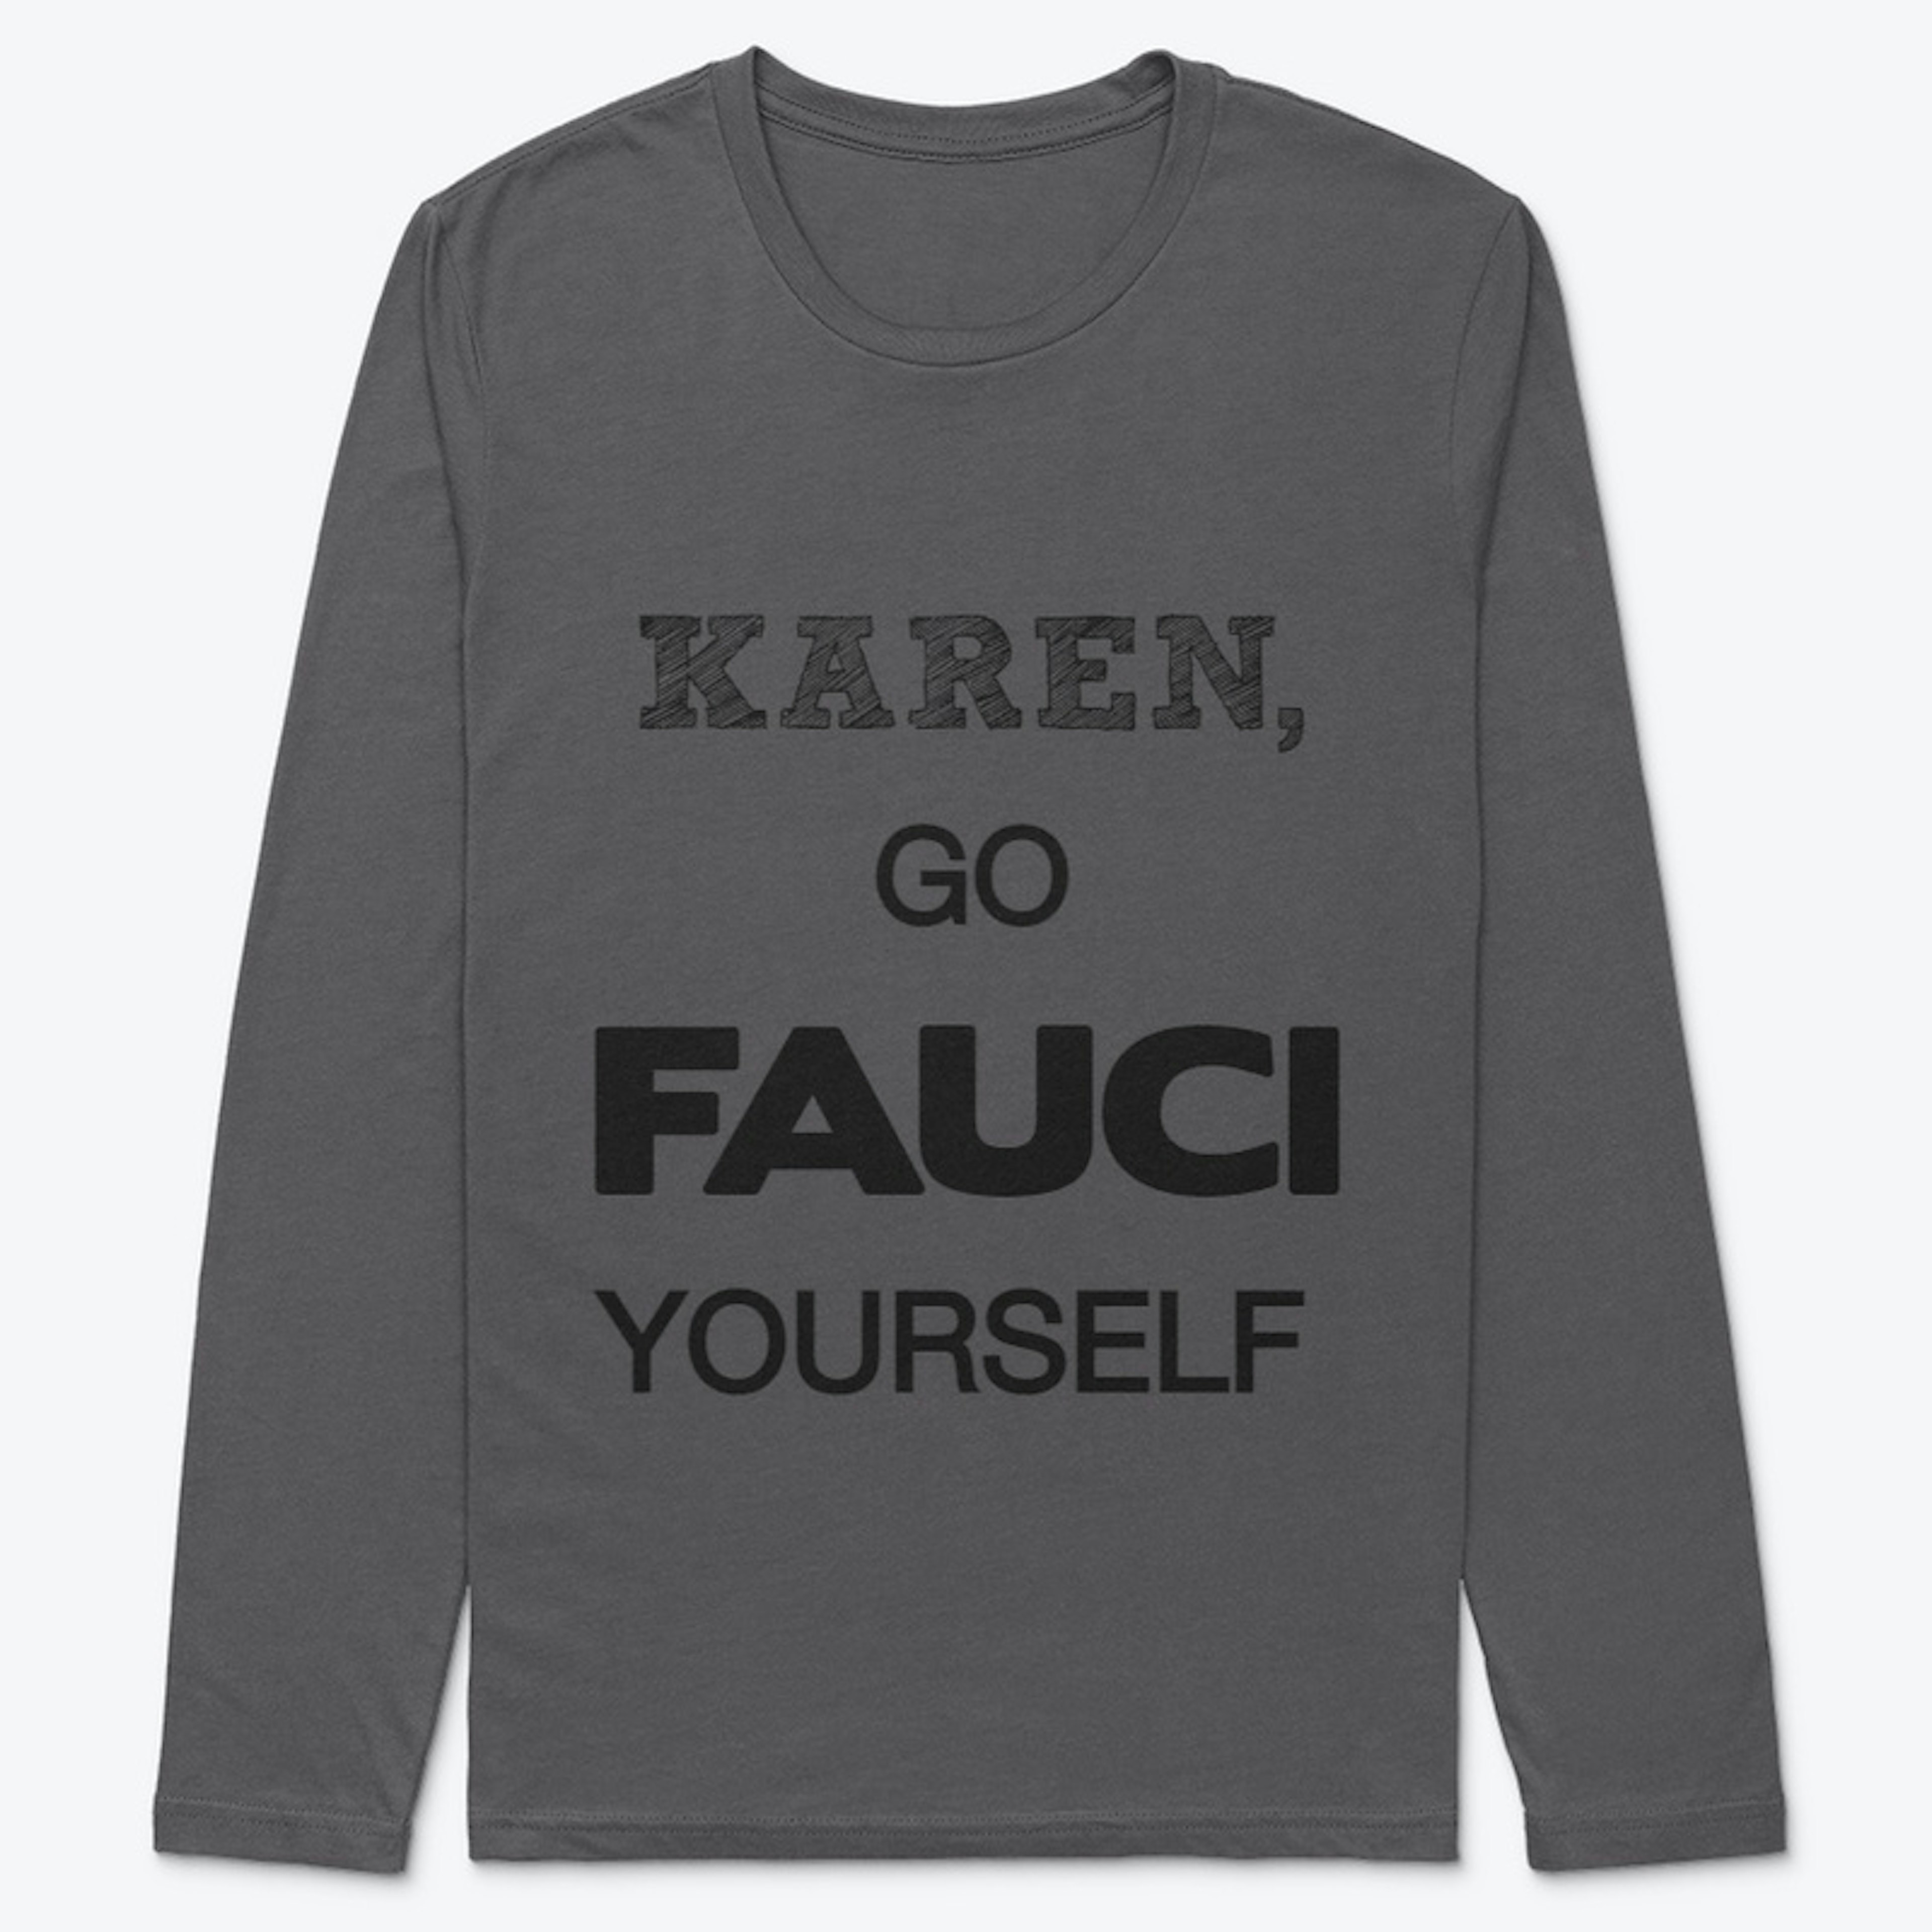 Hey Karen!